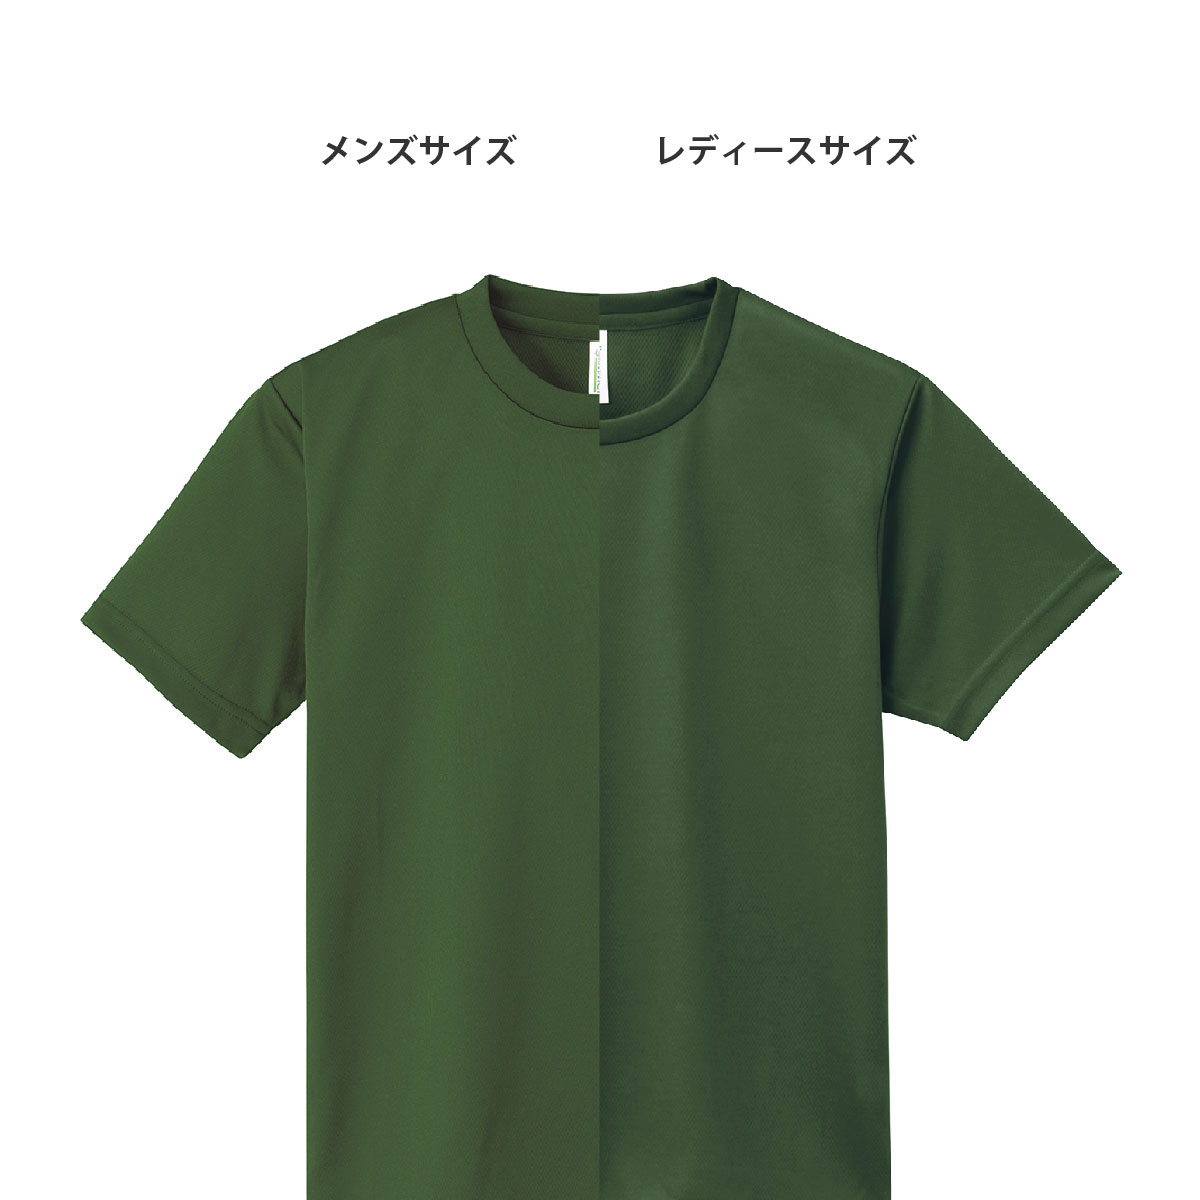 速乾 tシャツ GLIMMER グリマー 4.4オンス ドライ Tシャツ 00300-ACT 300act 基本色 メンズ キッズ 女性用 子供 ジュニア スポーツ 運動会 文化祭 ユニフォーム